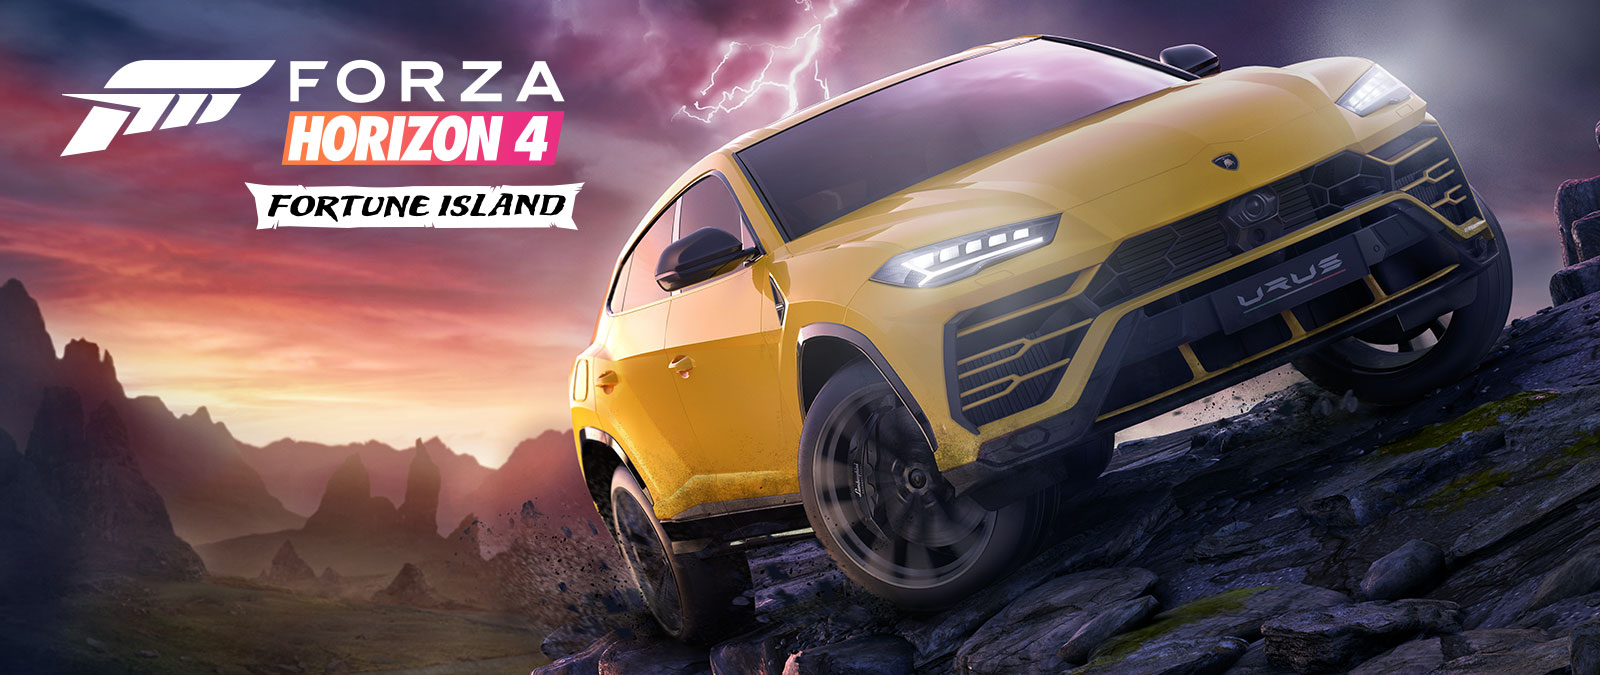 Forza Horizon 4 Fortune Island, en gul Lamborghini Urus kör i svår terräng med blixtar i bakgrunden